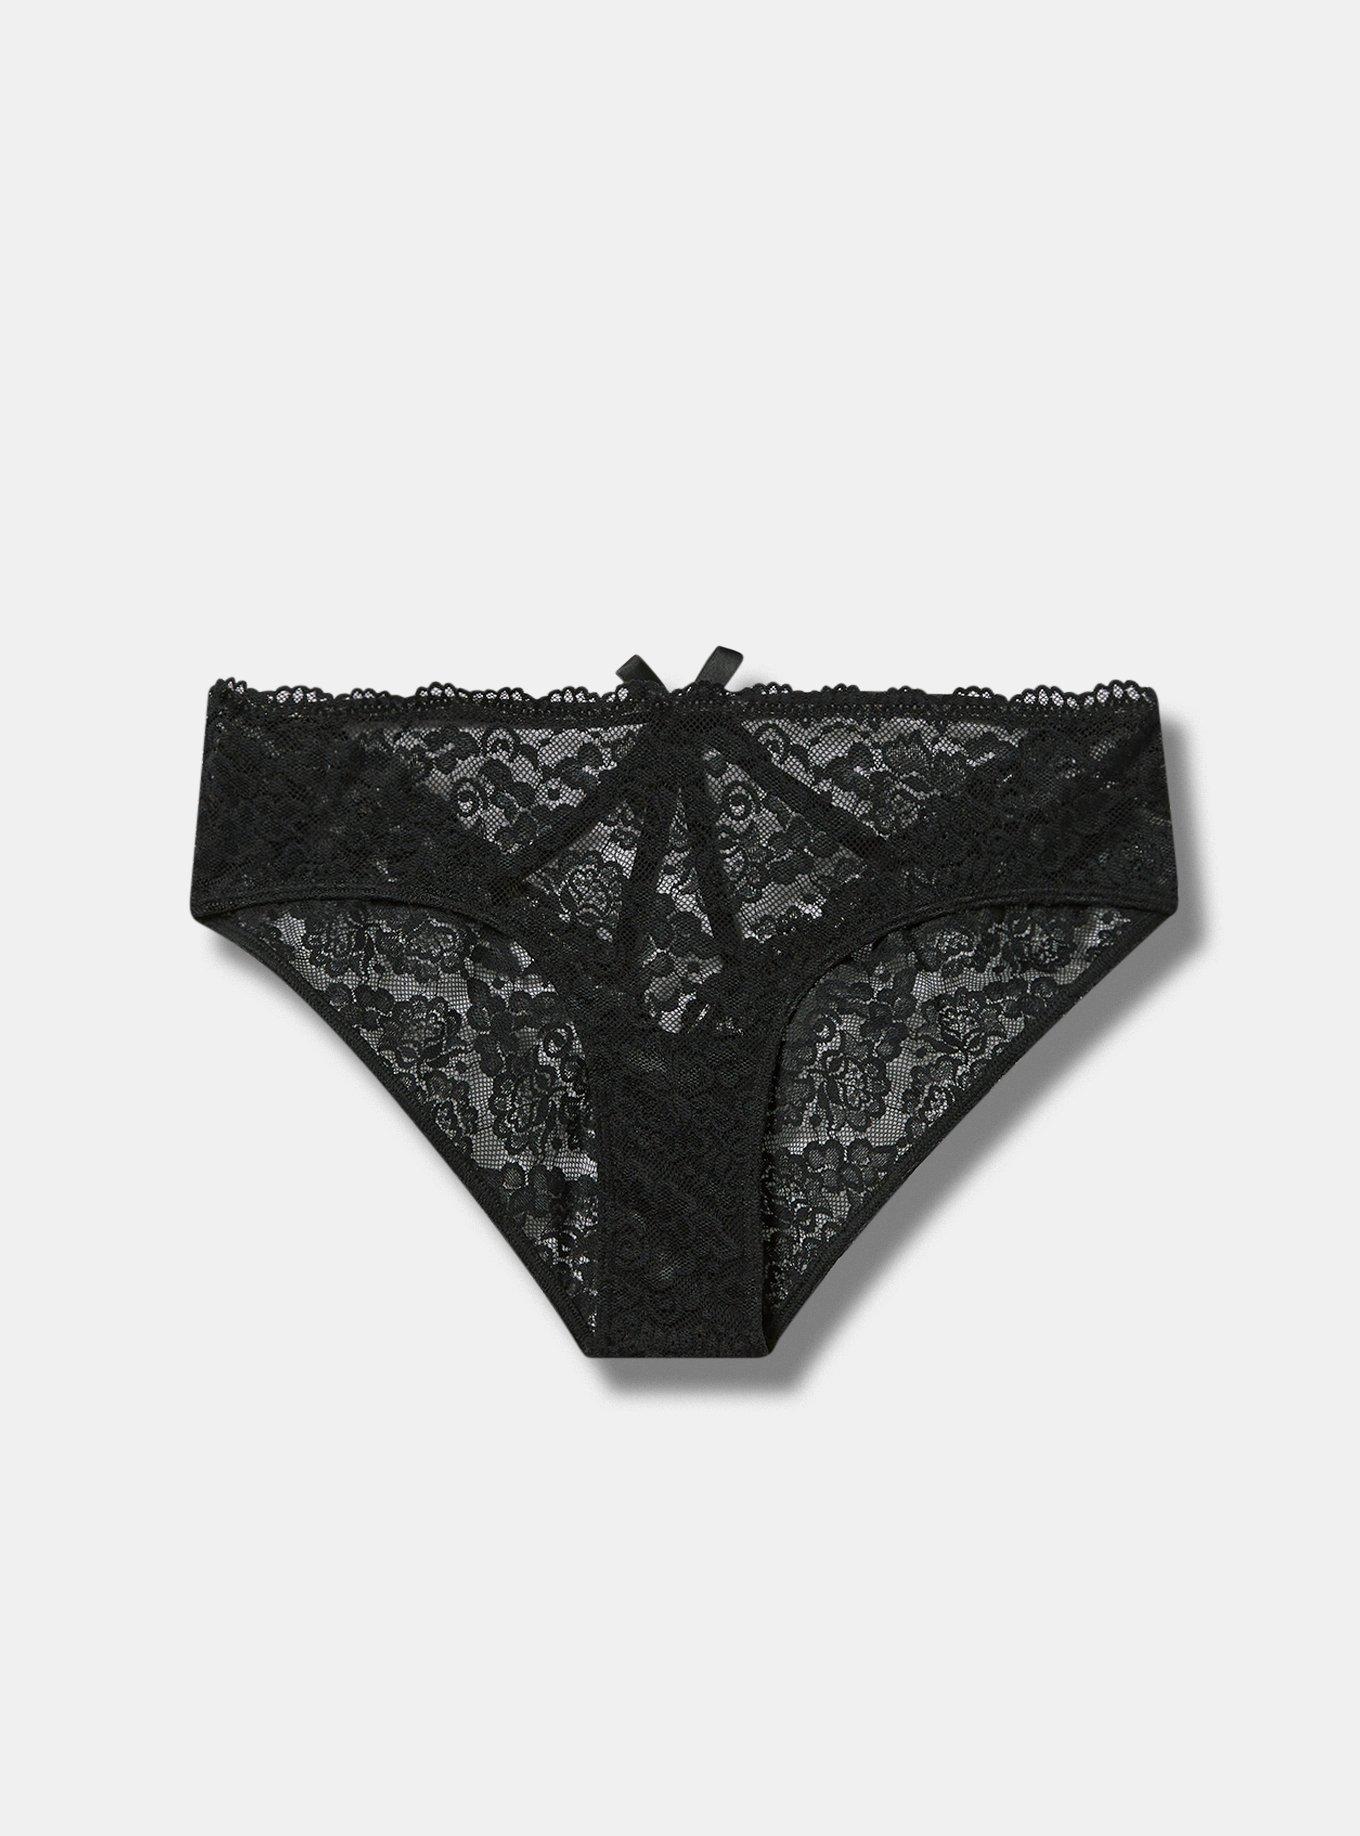 Women's Underwear Lacy Panties Lace Bikini Vietnam